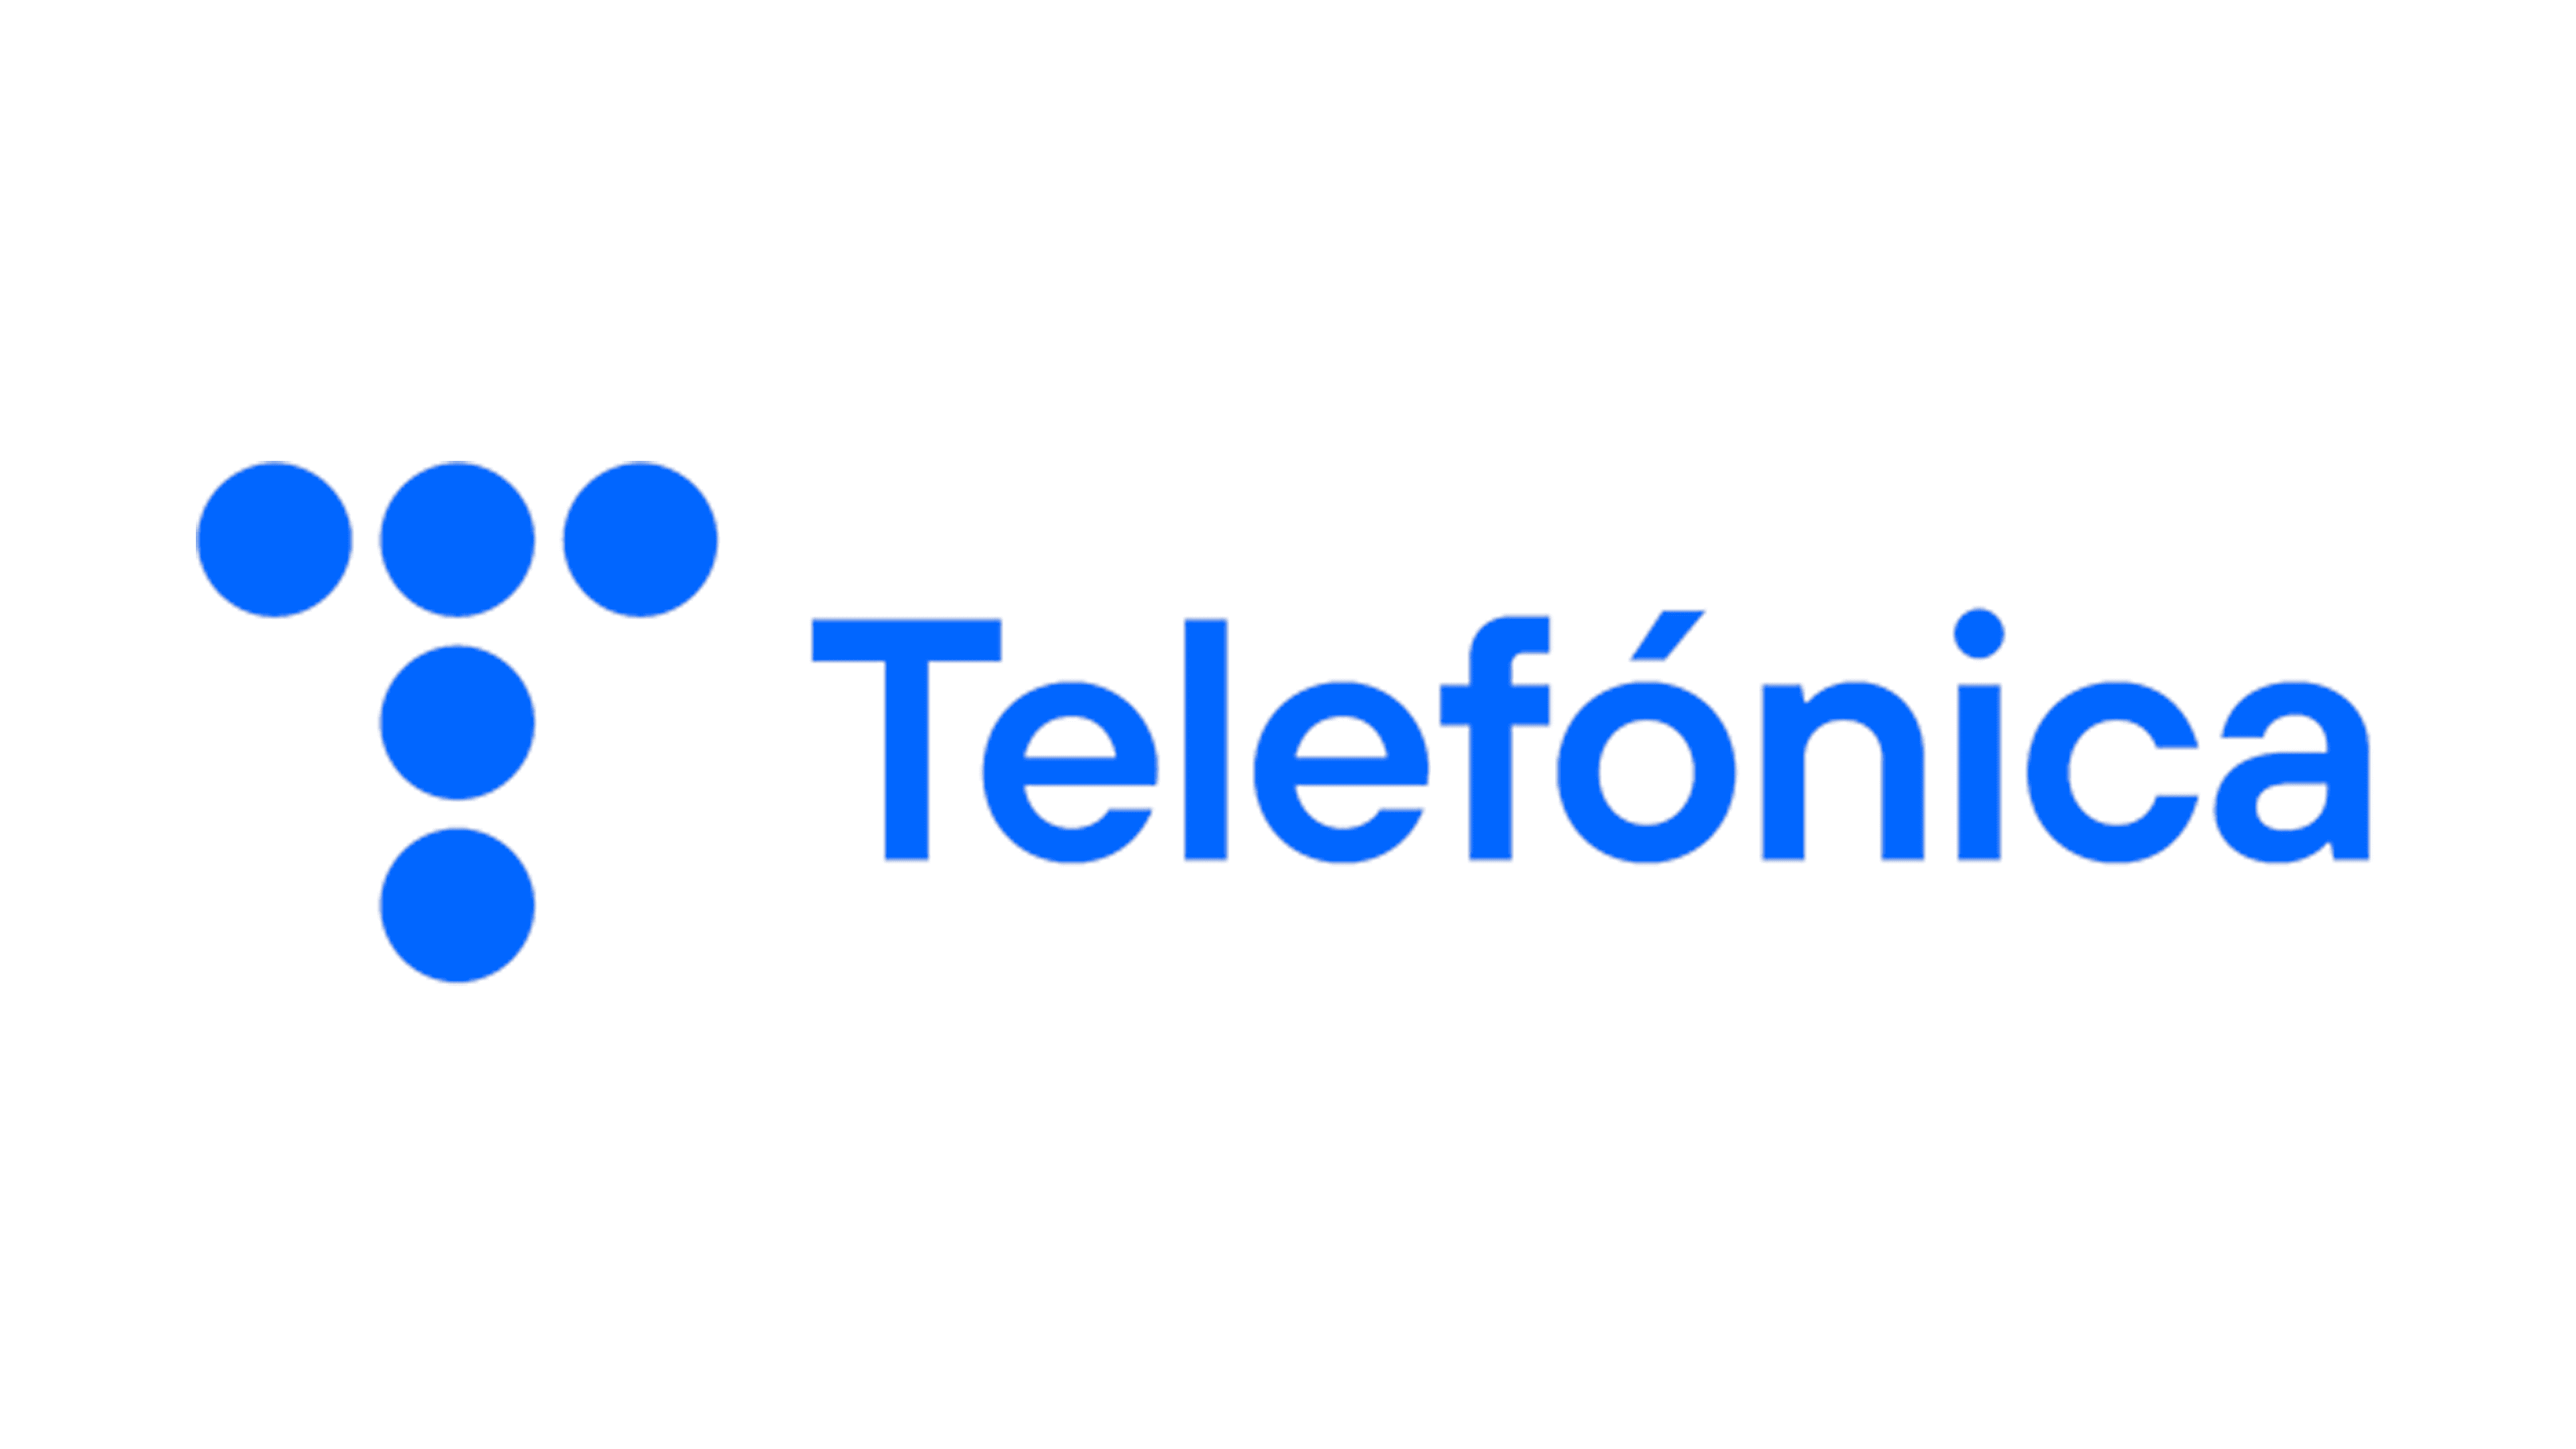 Telefonica-logo